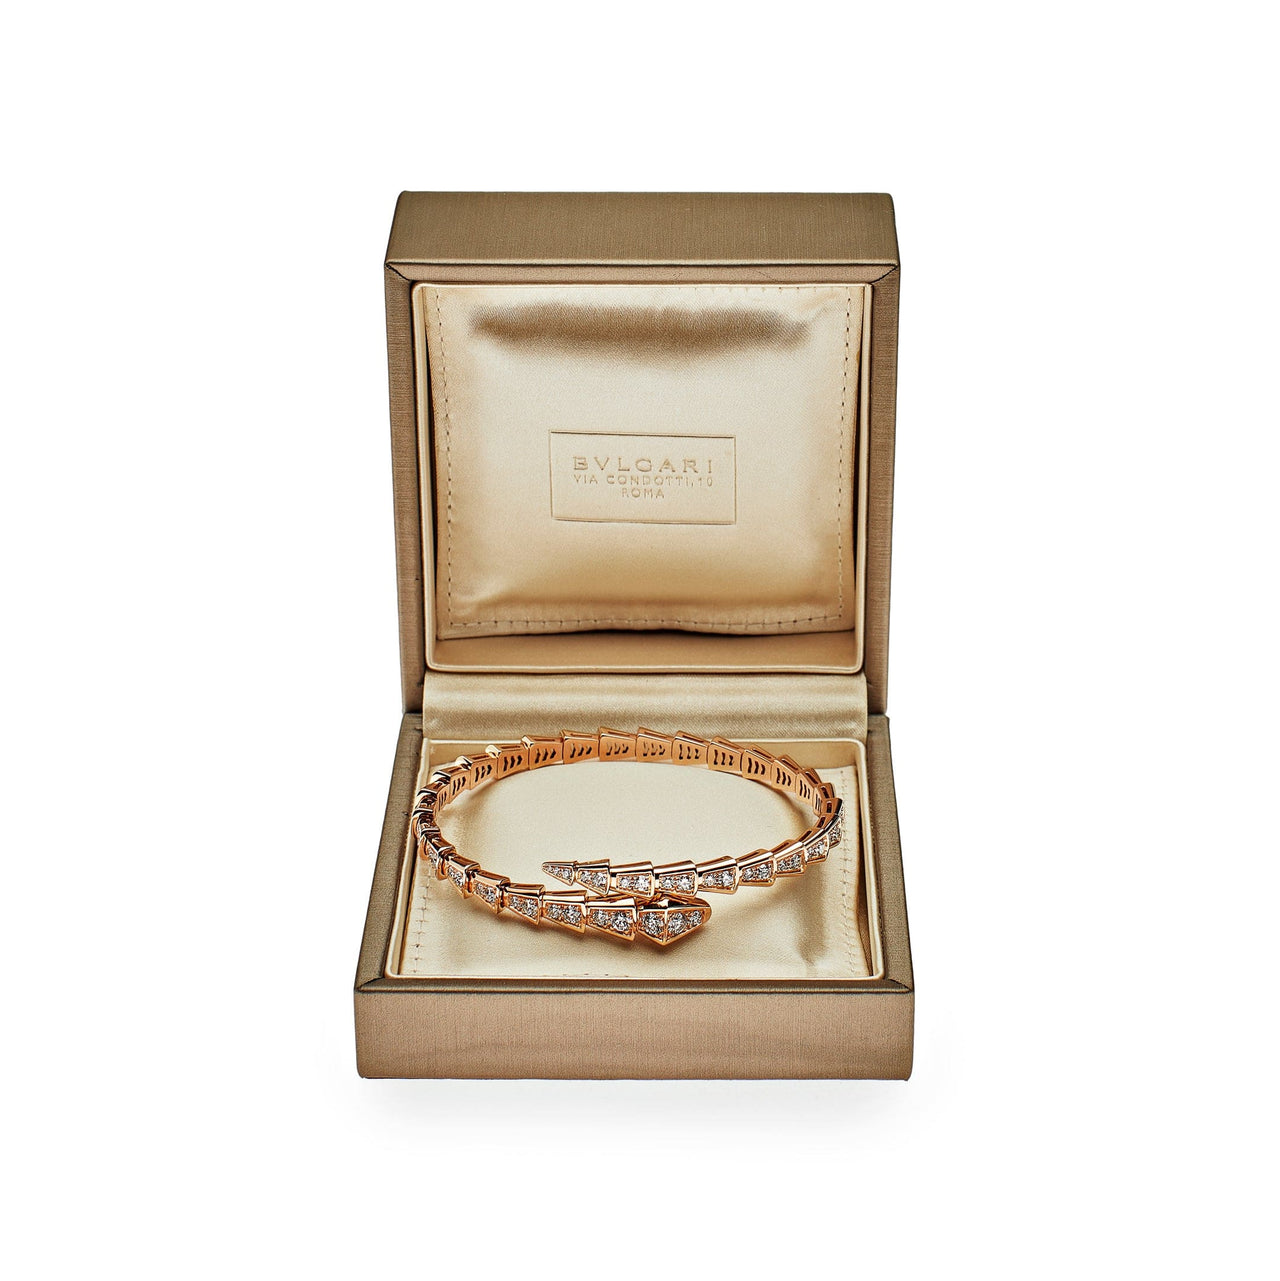 BULGARI scatola anello pendente bracciale astuccio custodia gioiello  VINTAGE | eBay